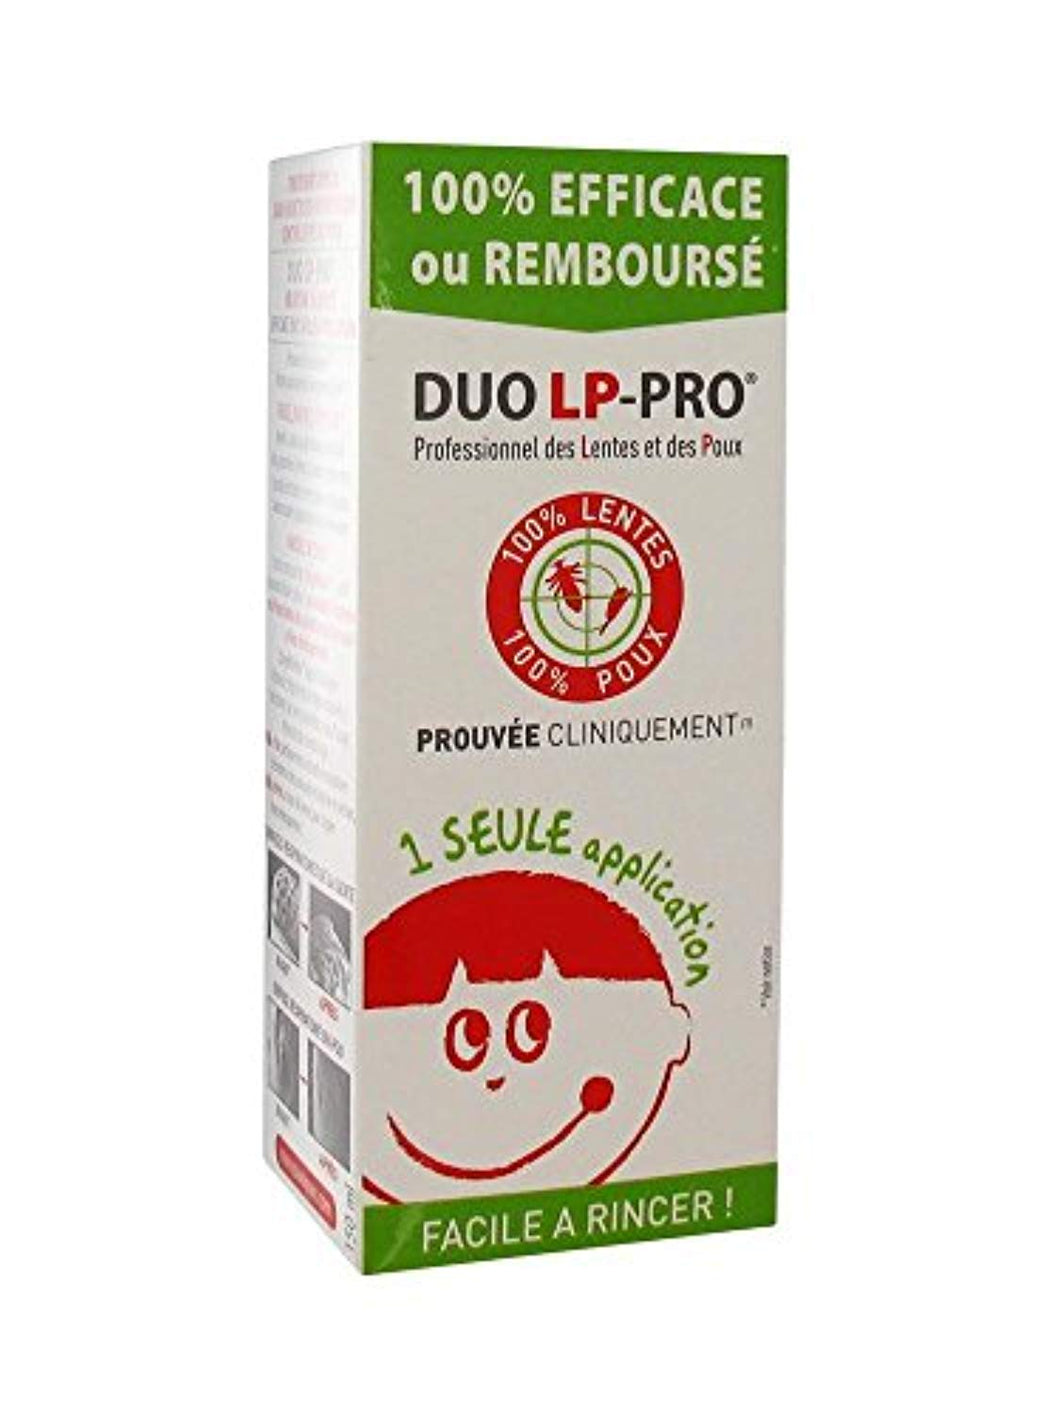 Duo LP-Pro Lotion Radicale Lentes et Poux 150 ml –